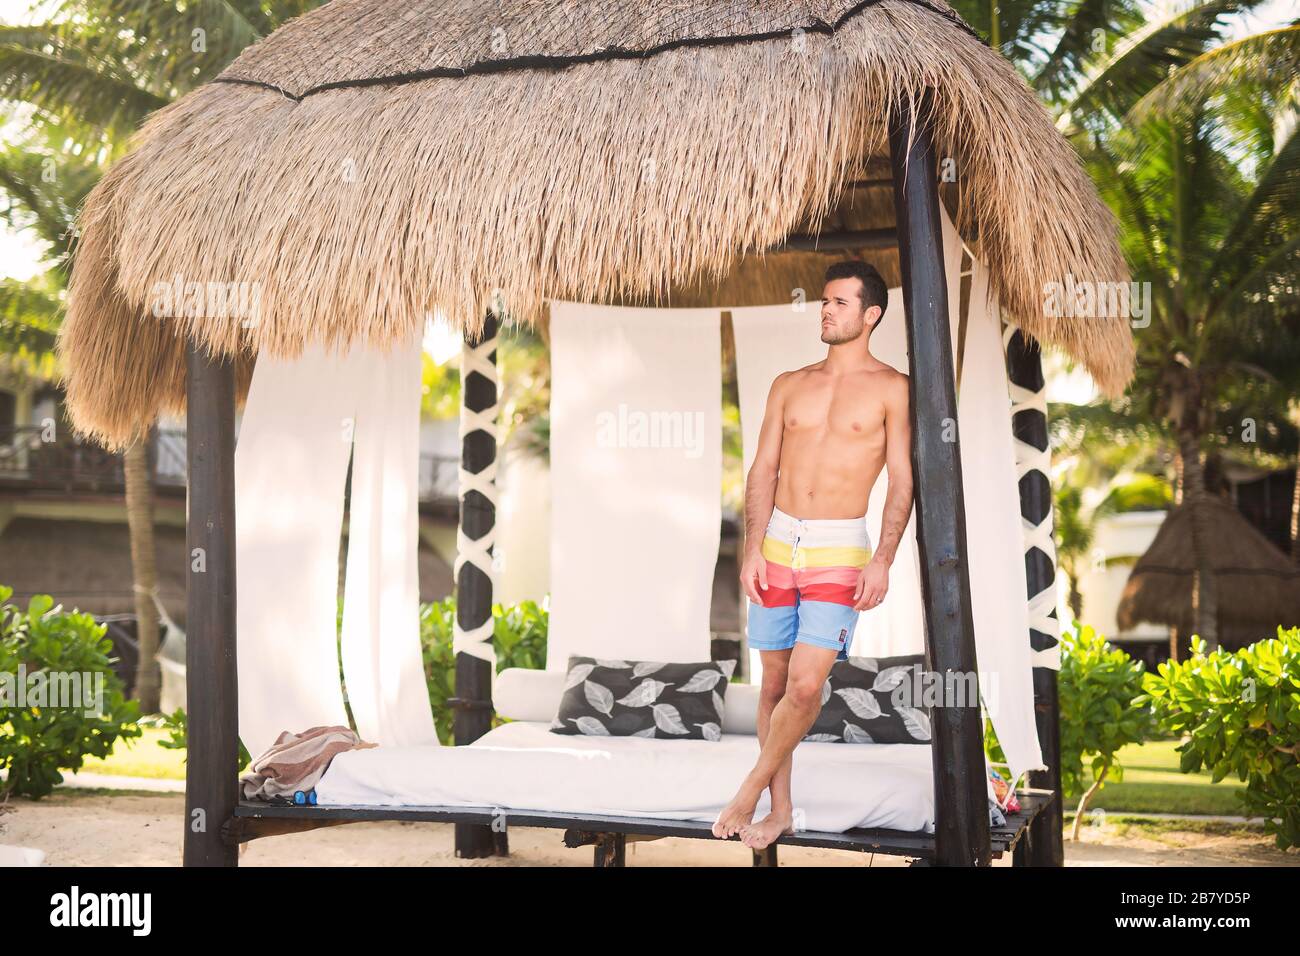 Genießen Sie die warme Sonne am mexikanischen Strand - junger Mann, der im Schatten ruht Stockfoto